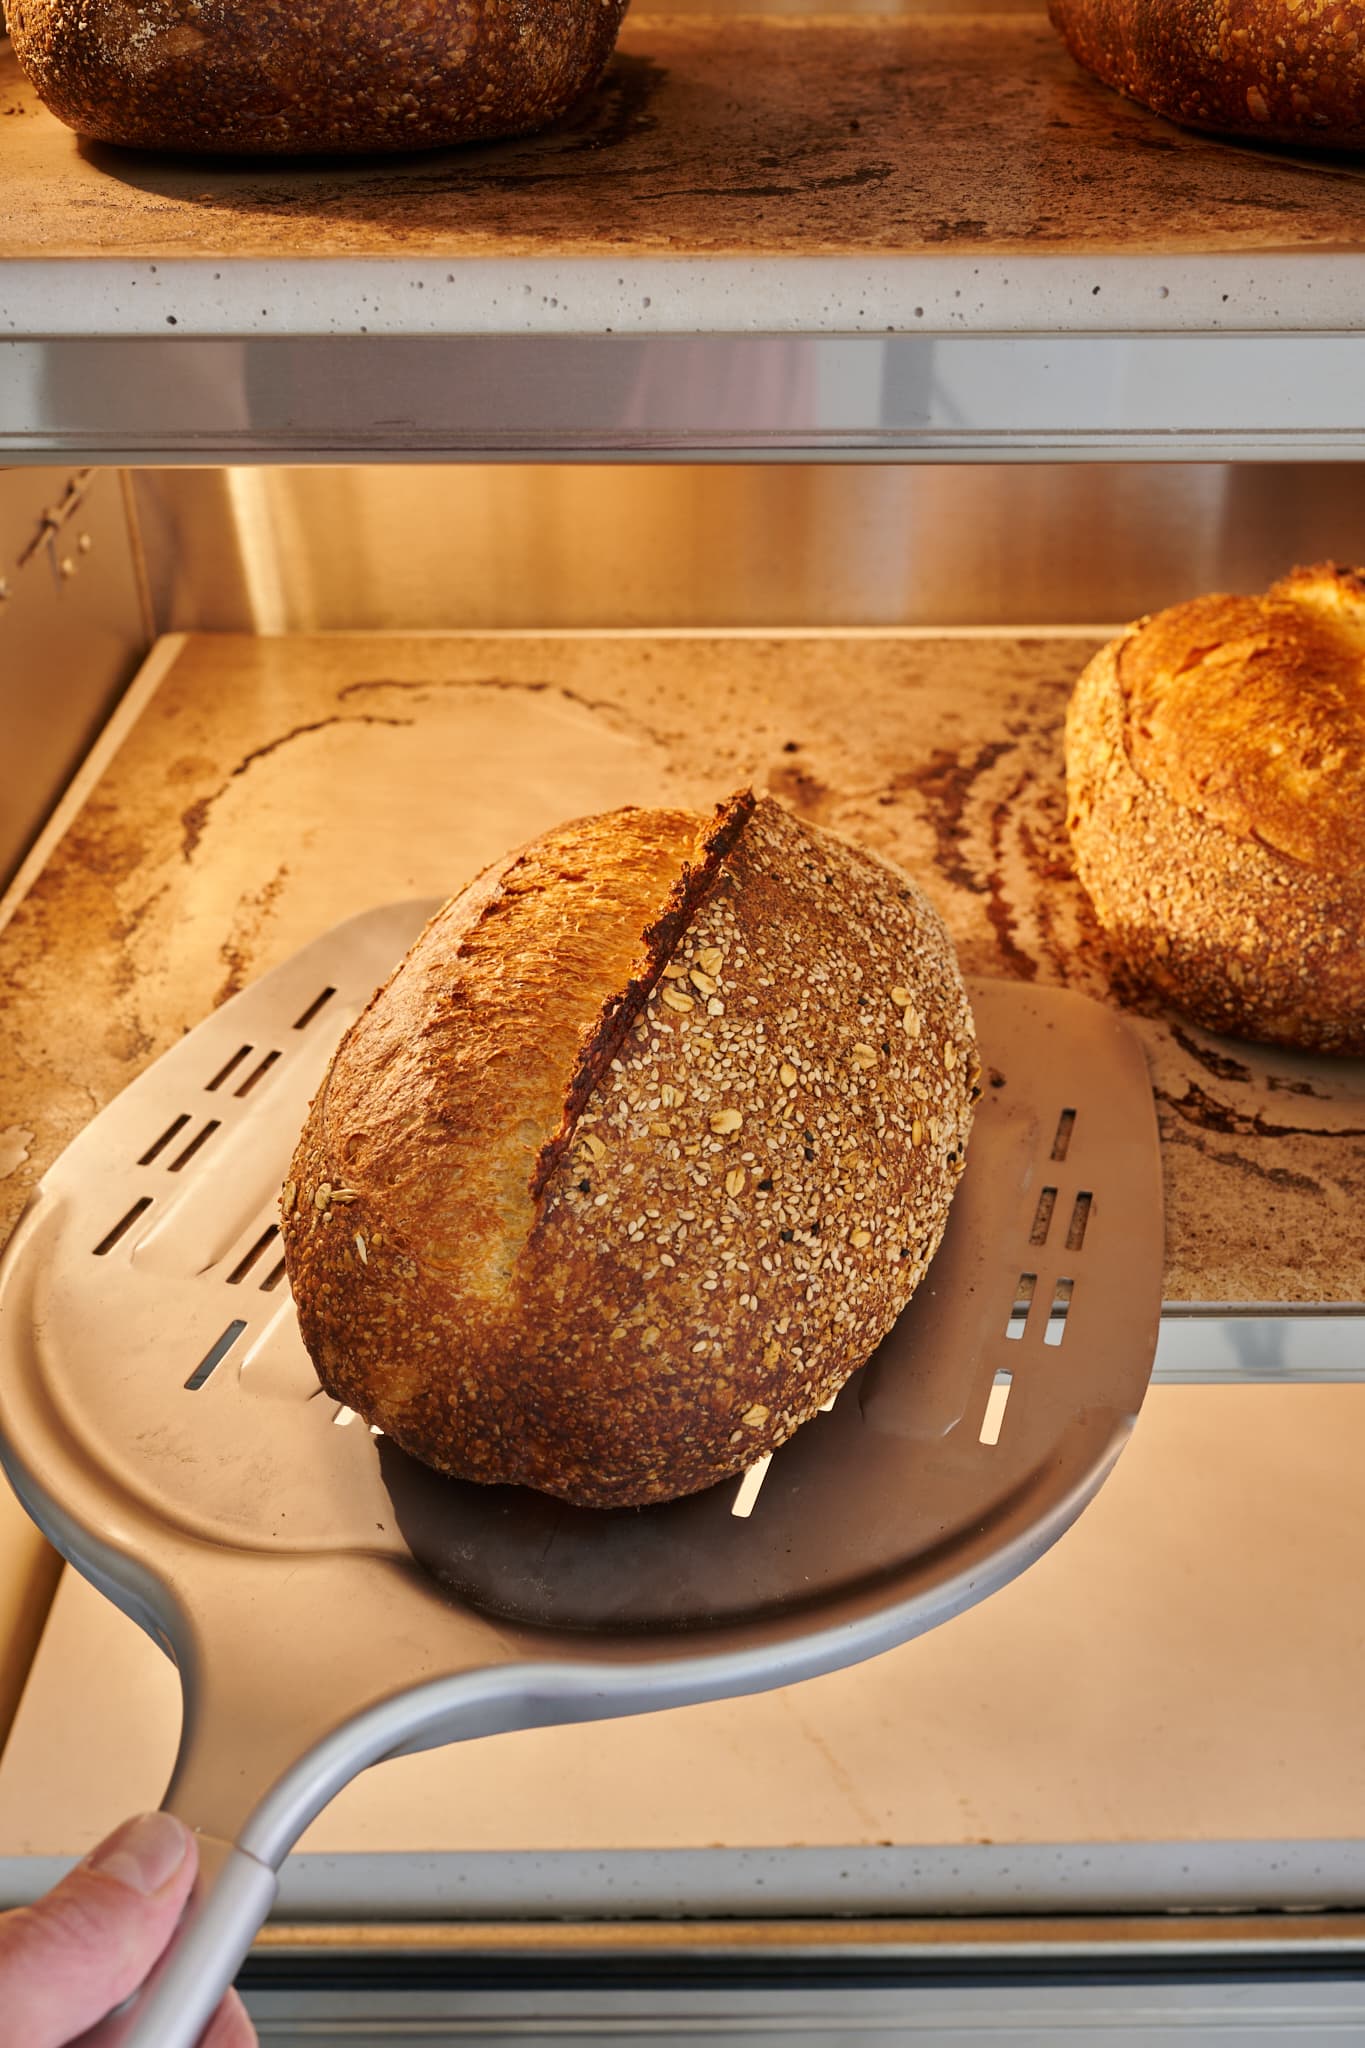 Baked sourdough bread inside RackMaster bread oven